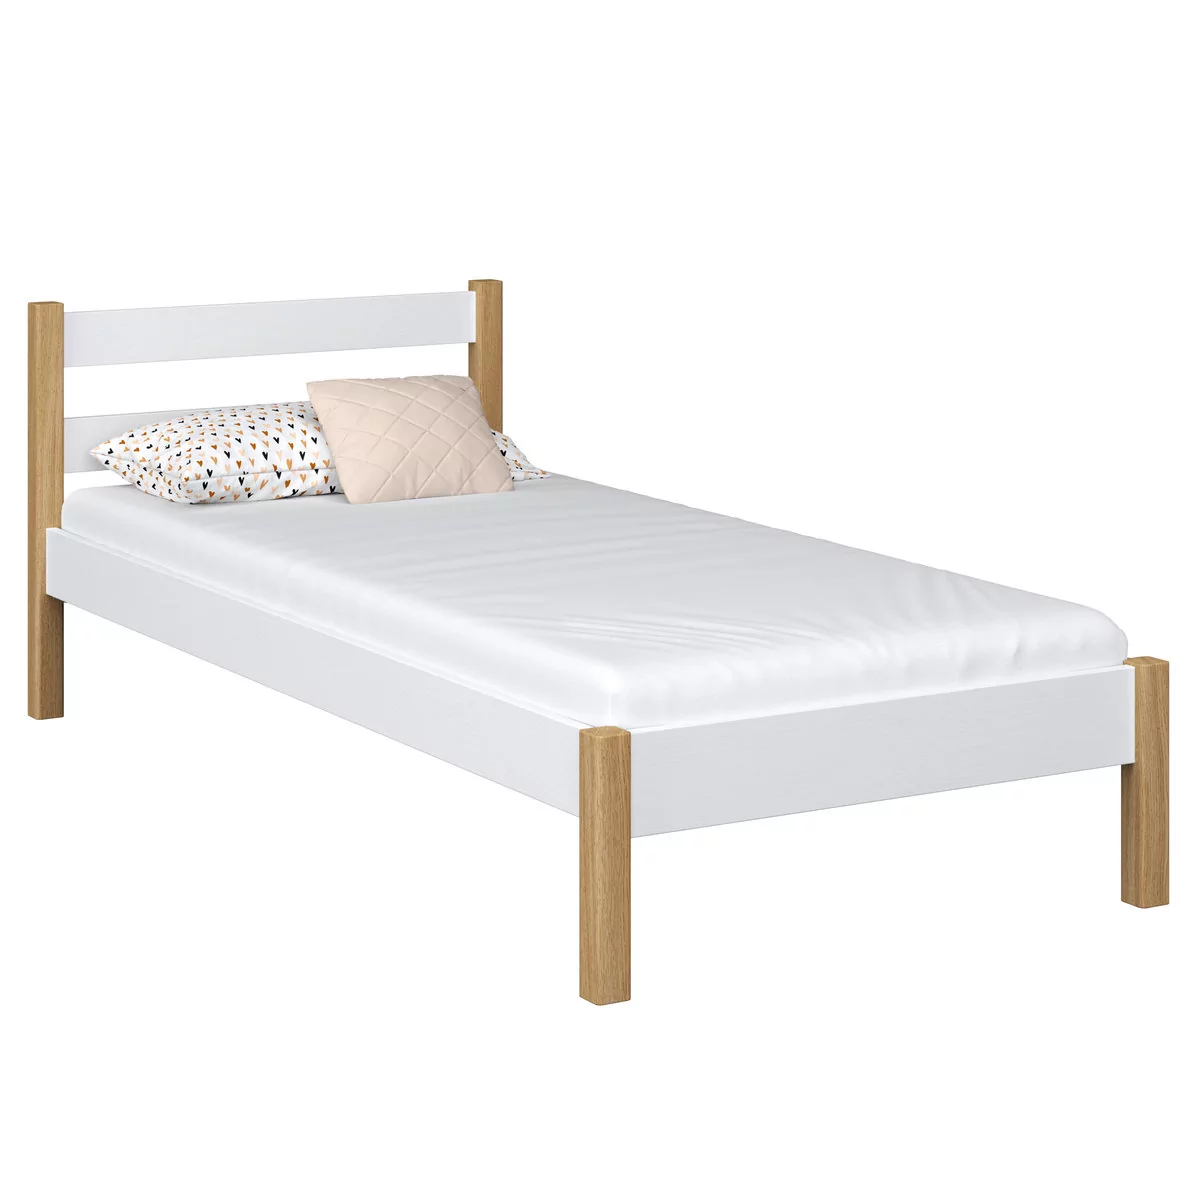 Drewniane łóżko pojedyncze N01 biało dębowe 120x200